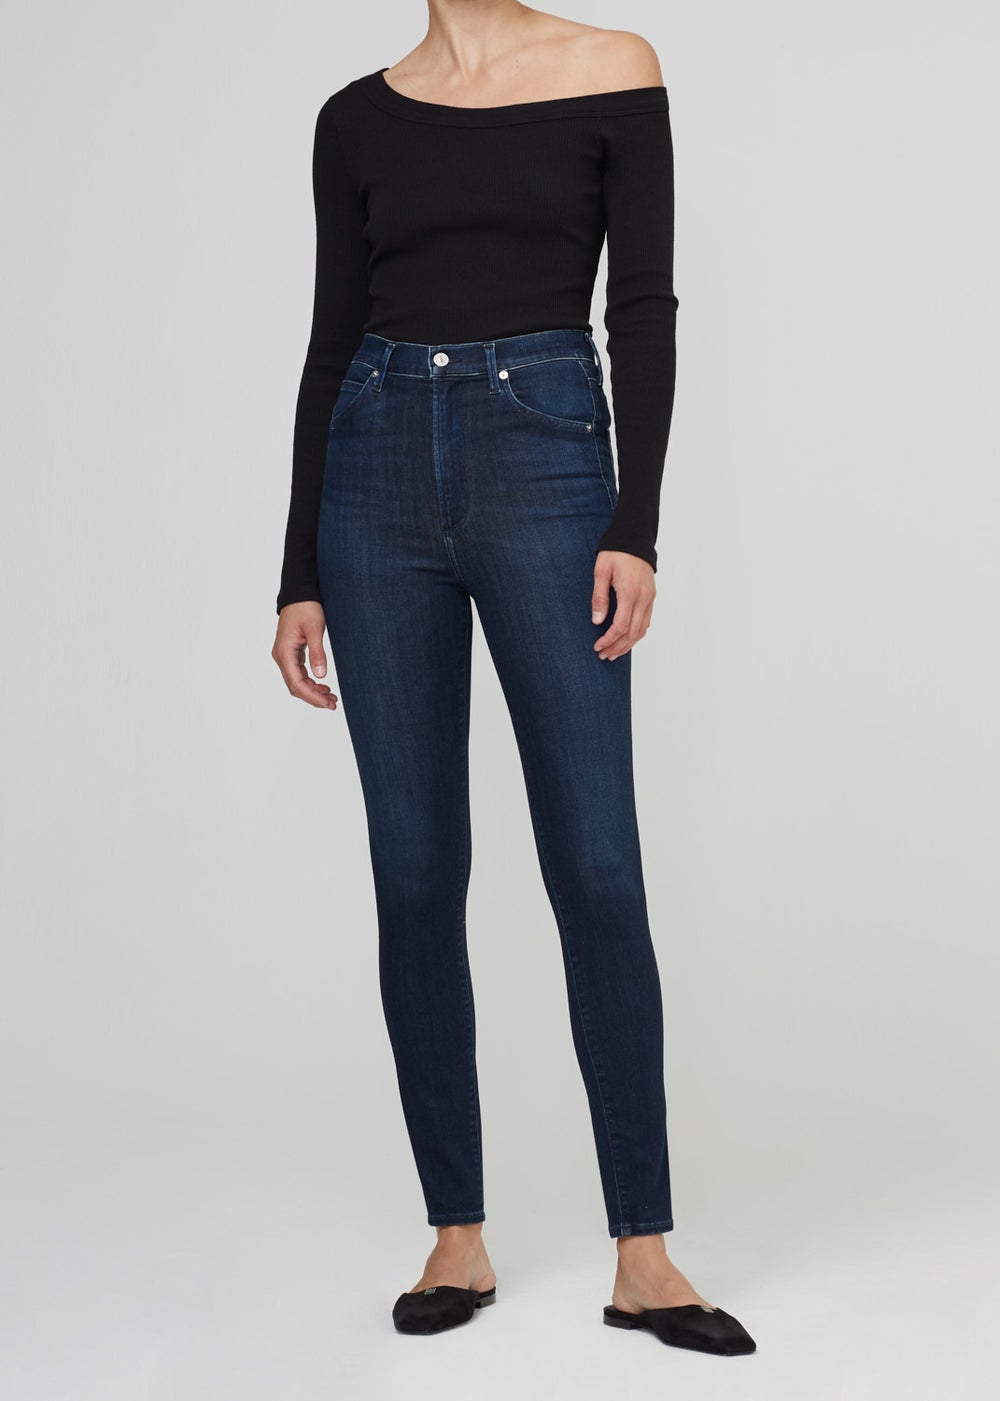 Chrissy Jeans in De Nimes